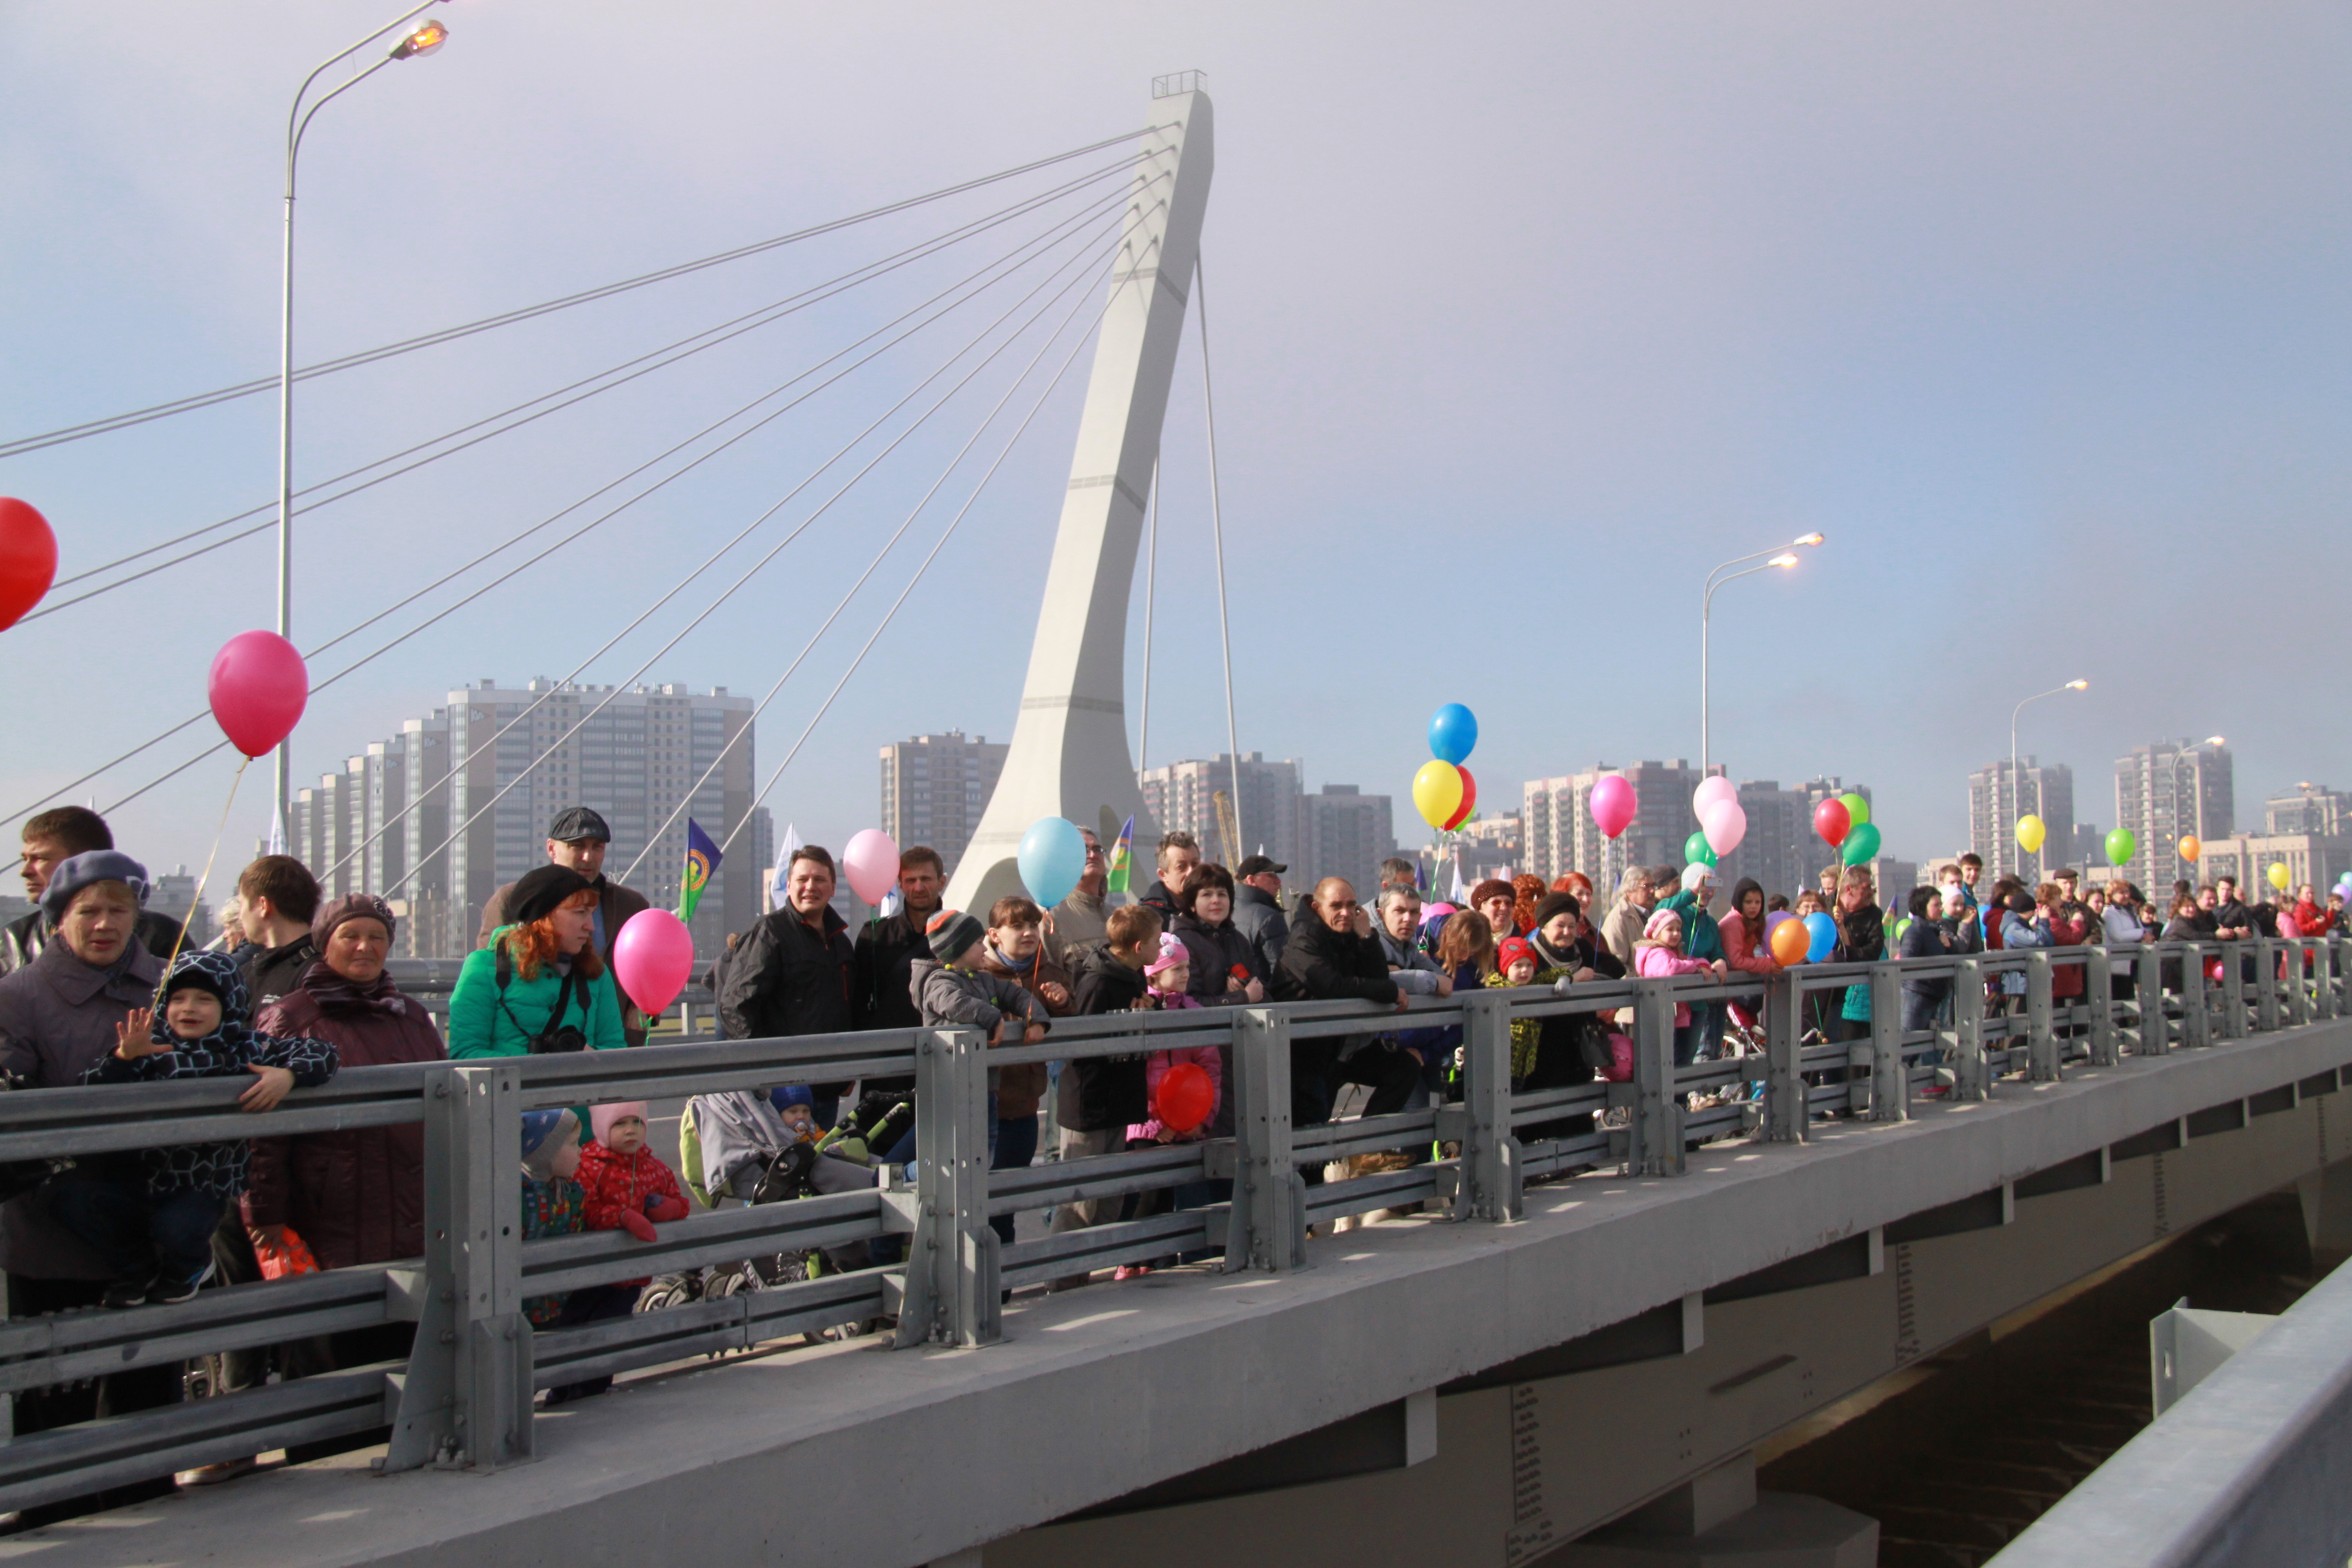 Заявка на референдум о мосте Кадырова была составлена второпях - избирком